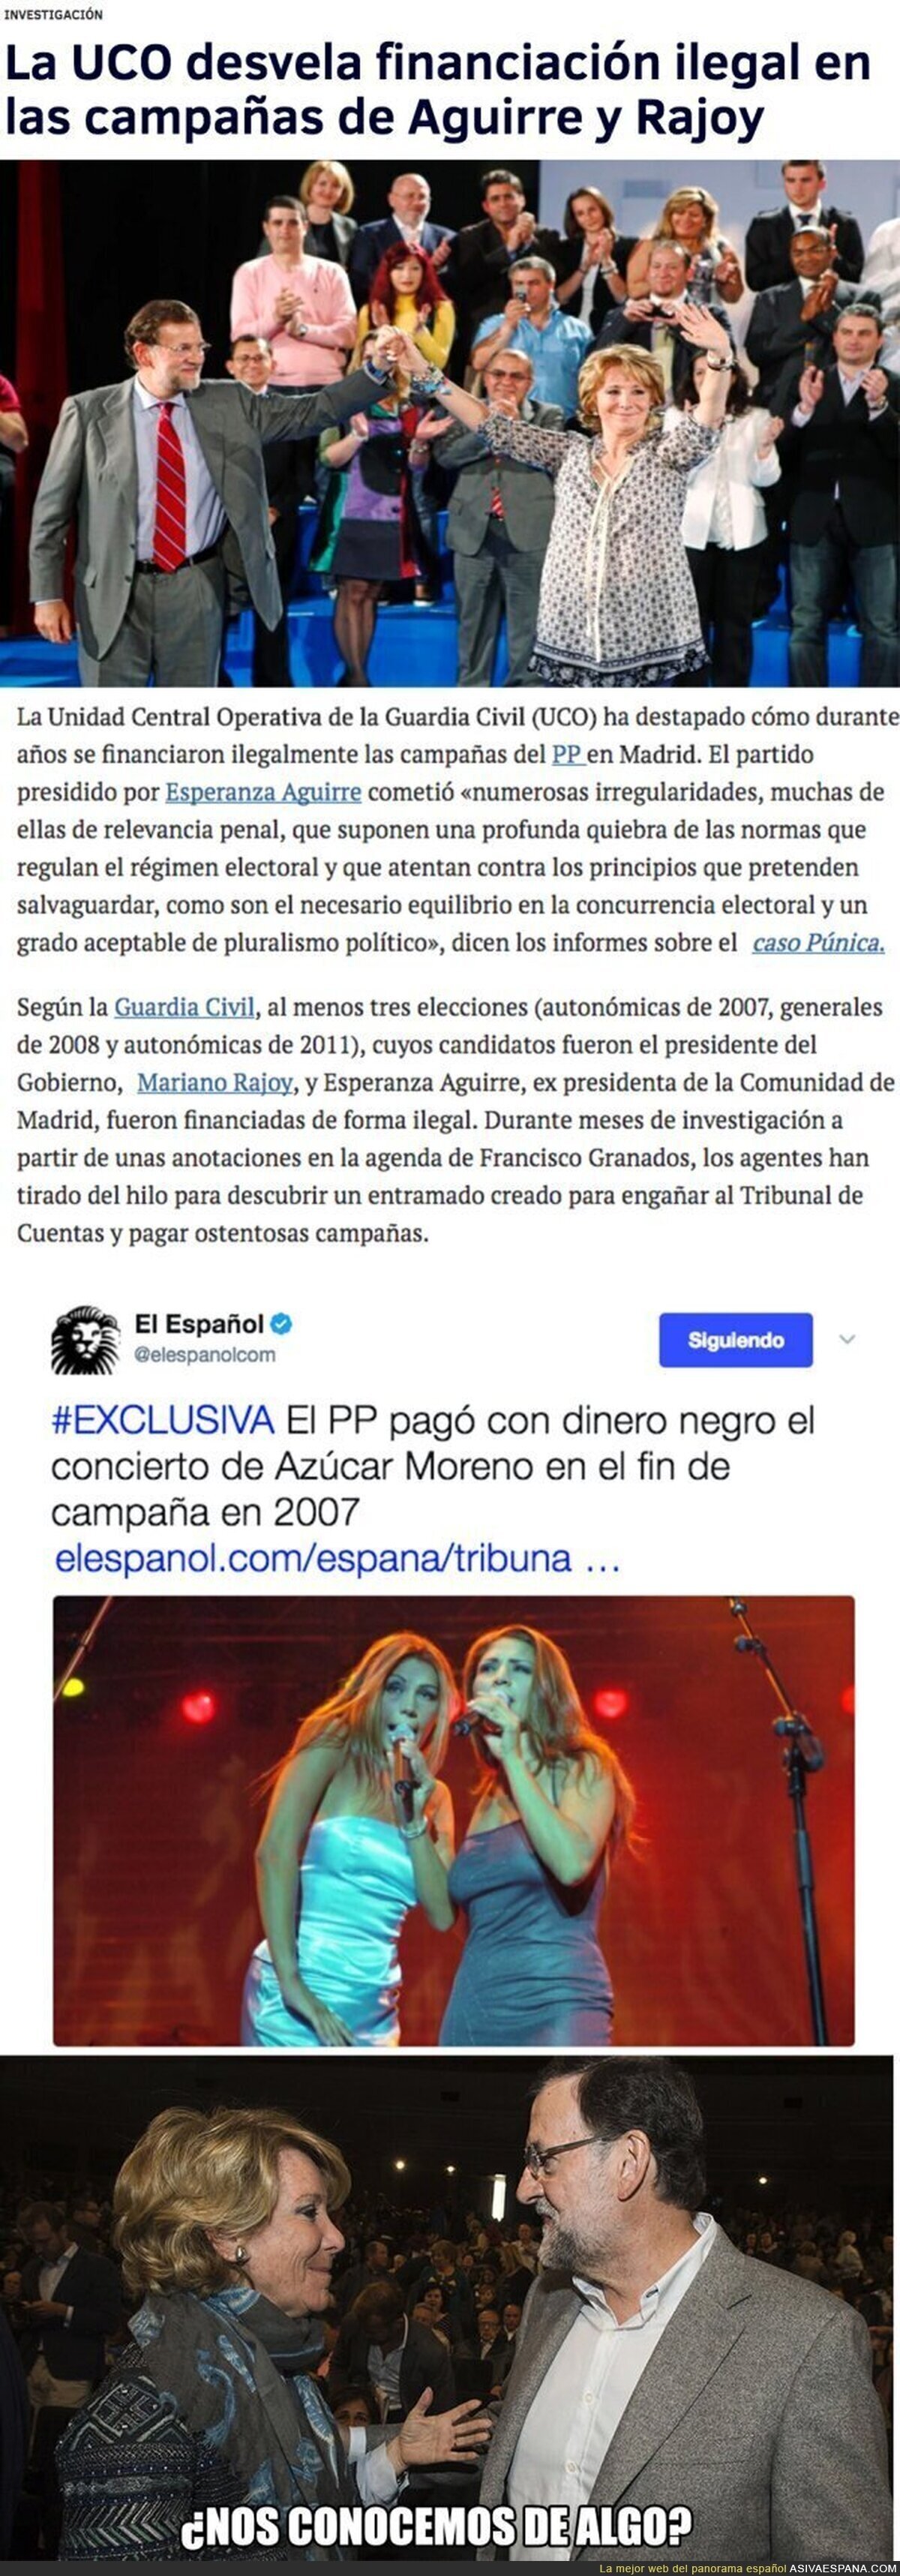 En cualquier país del Mundo ahora mismo Rajoy y Esperanza Aguirre estarían en la cárcel